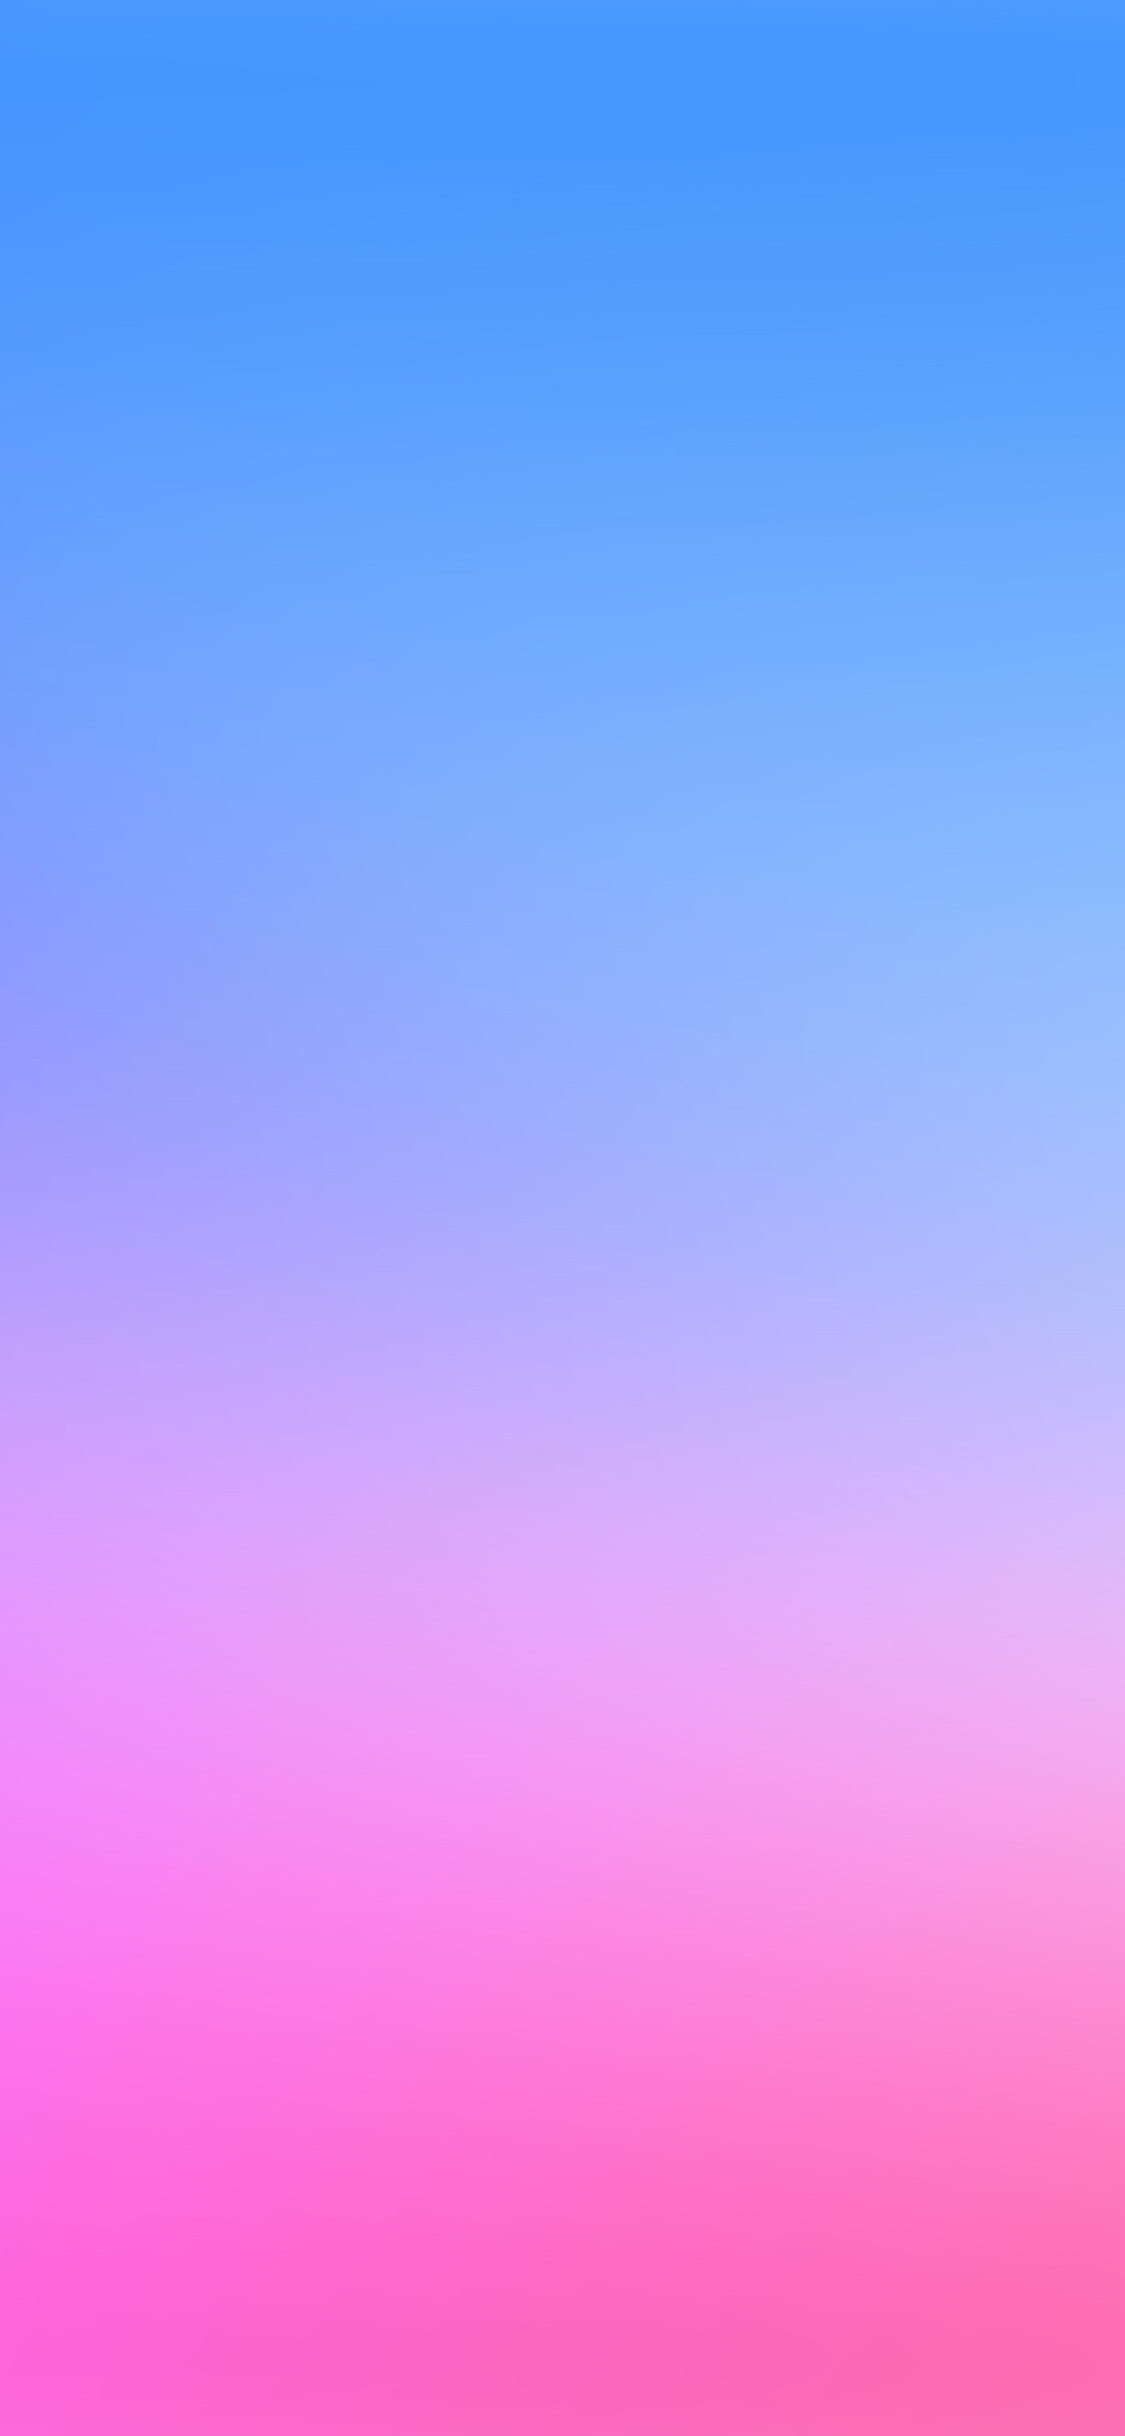 iPhone X wallpaper. pink blue blur gradation